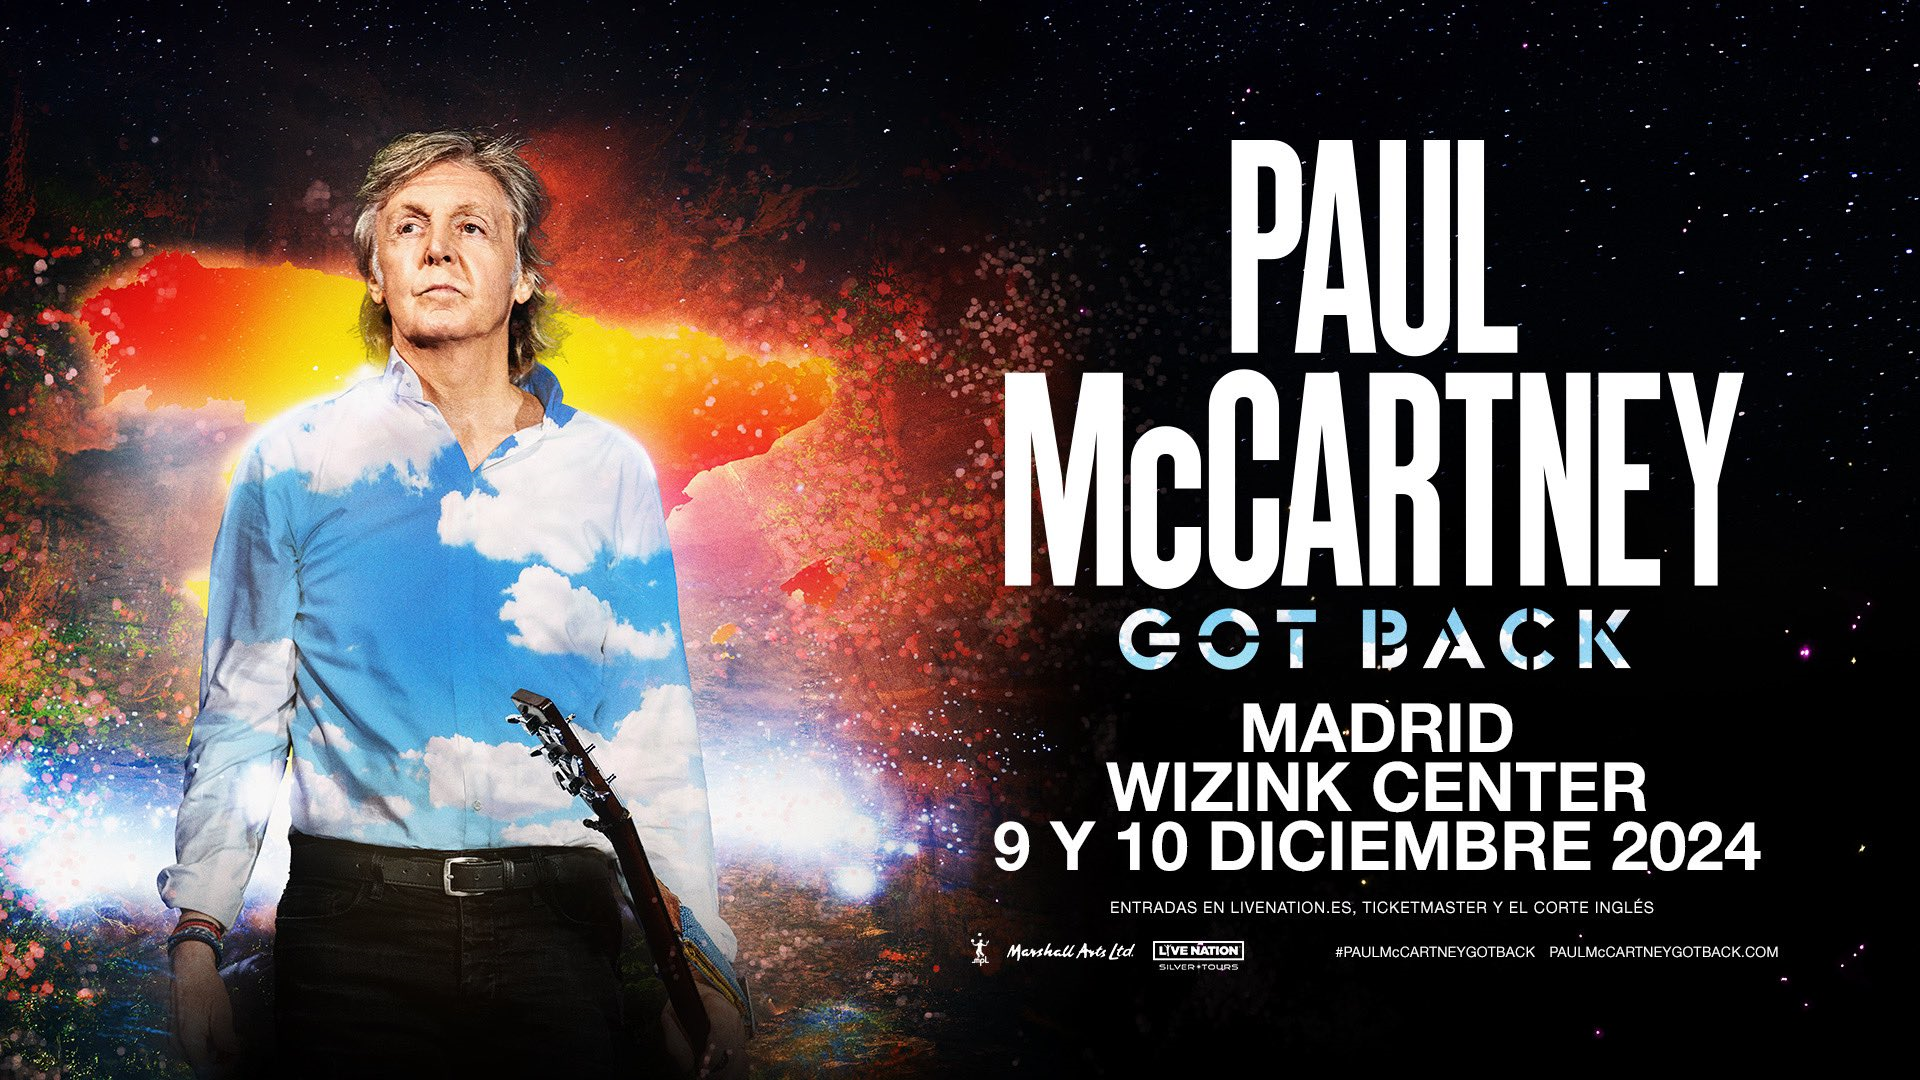 Toda la información de las entradas para los conciertos de Paul McCartney en el WiZink Center en diciembre de 2024